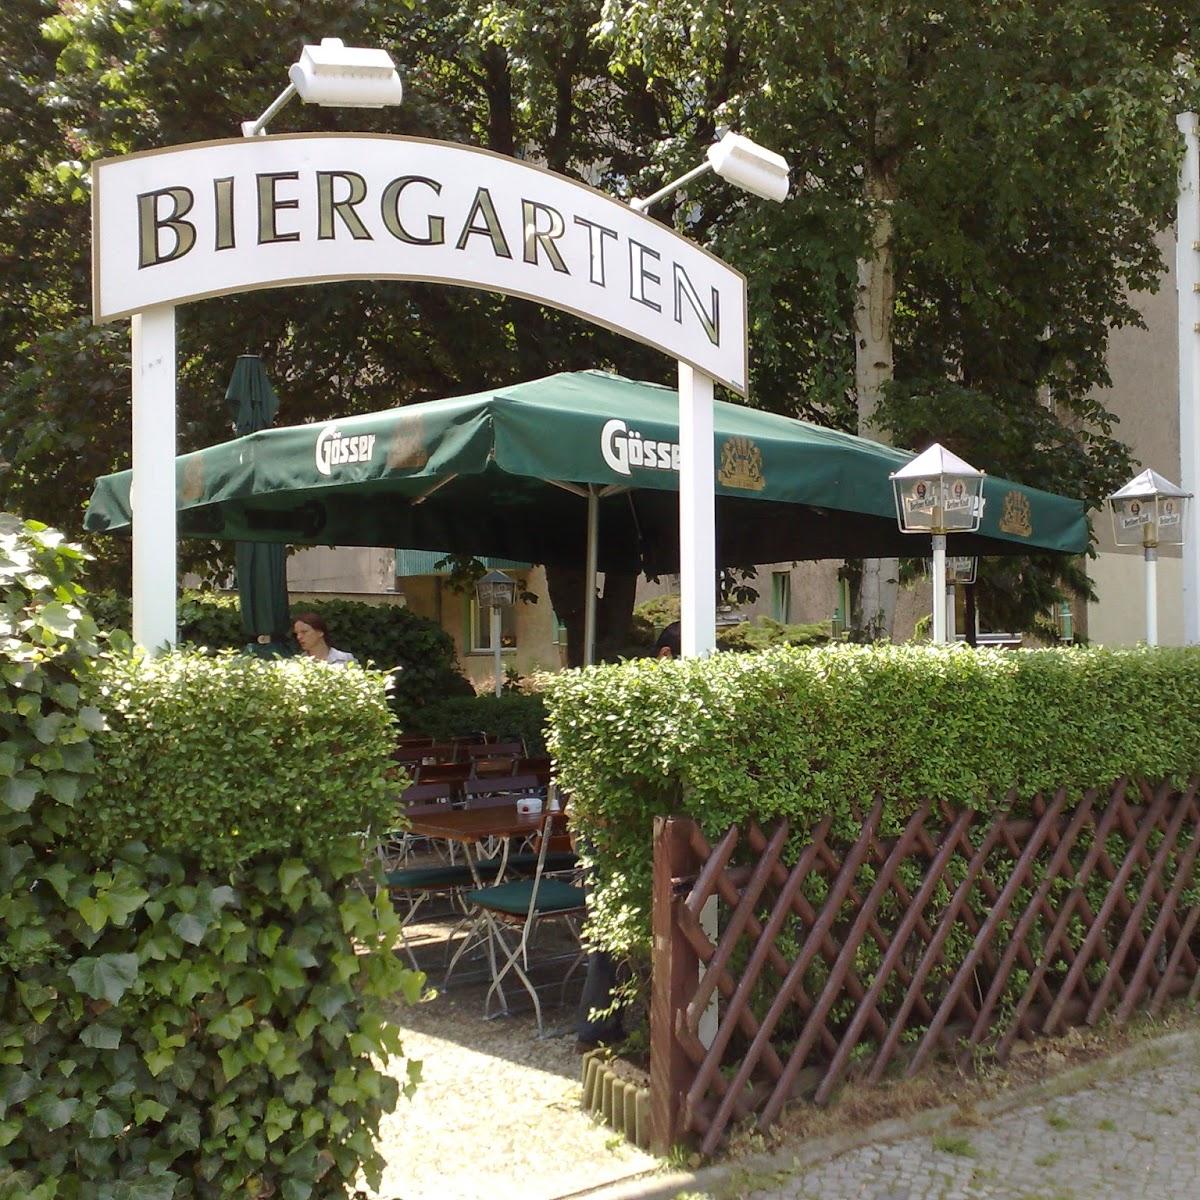 Restaurant "Gasthaus Stelzeneder" in Berlin